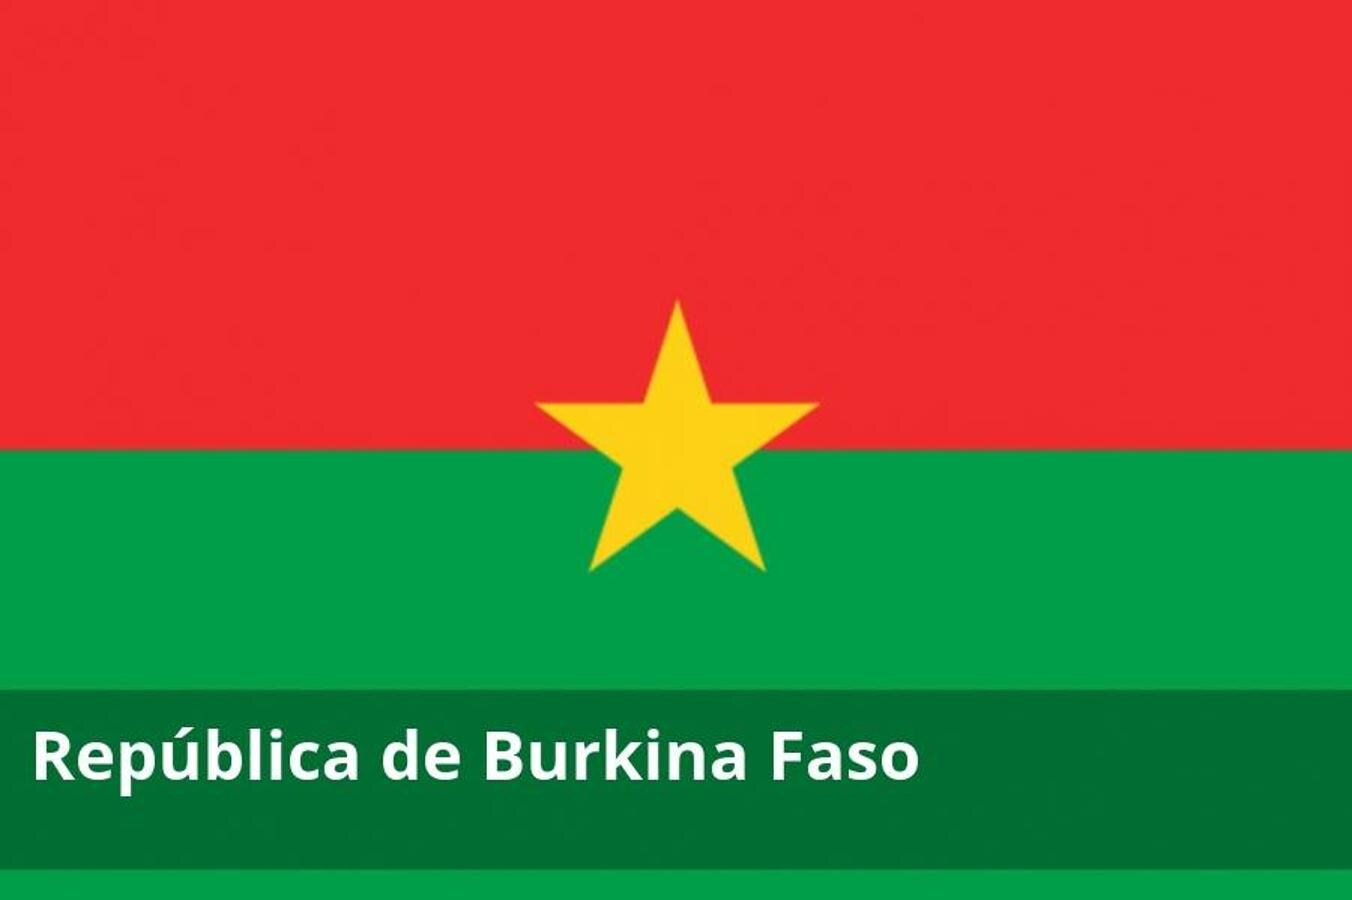 Existen riesgos de secuestro y ataque terrorista en todo el territorio de Burkina Faso, en particular en la zona fronteriza con Mali. Dicha amenaza existe también en la capital, Uagadugú.